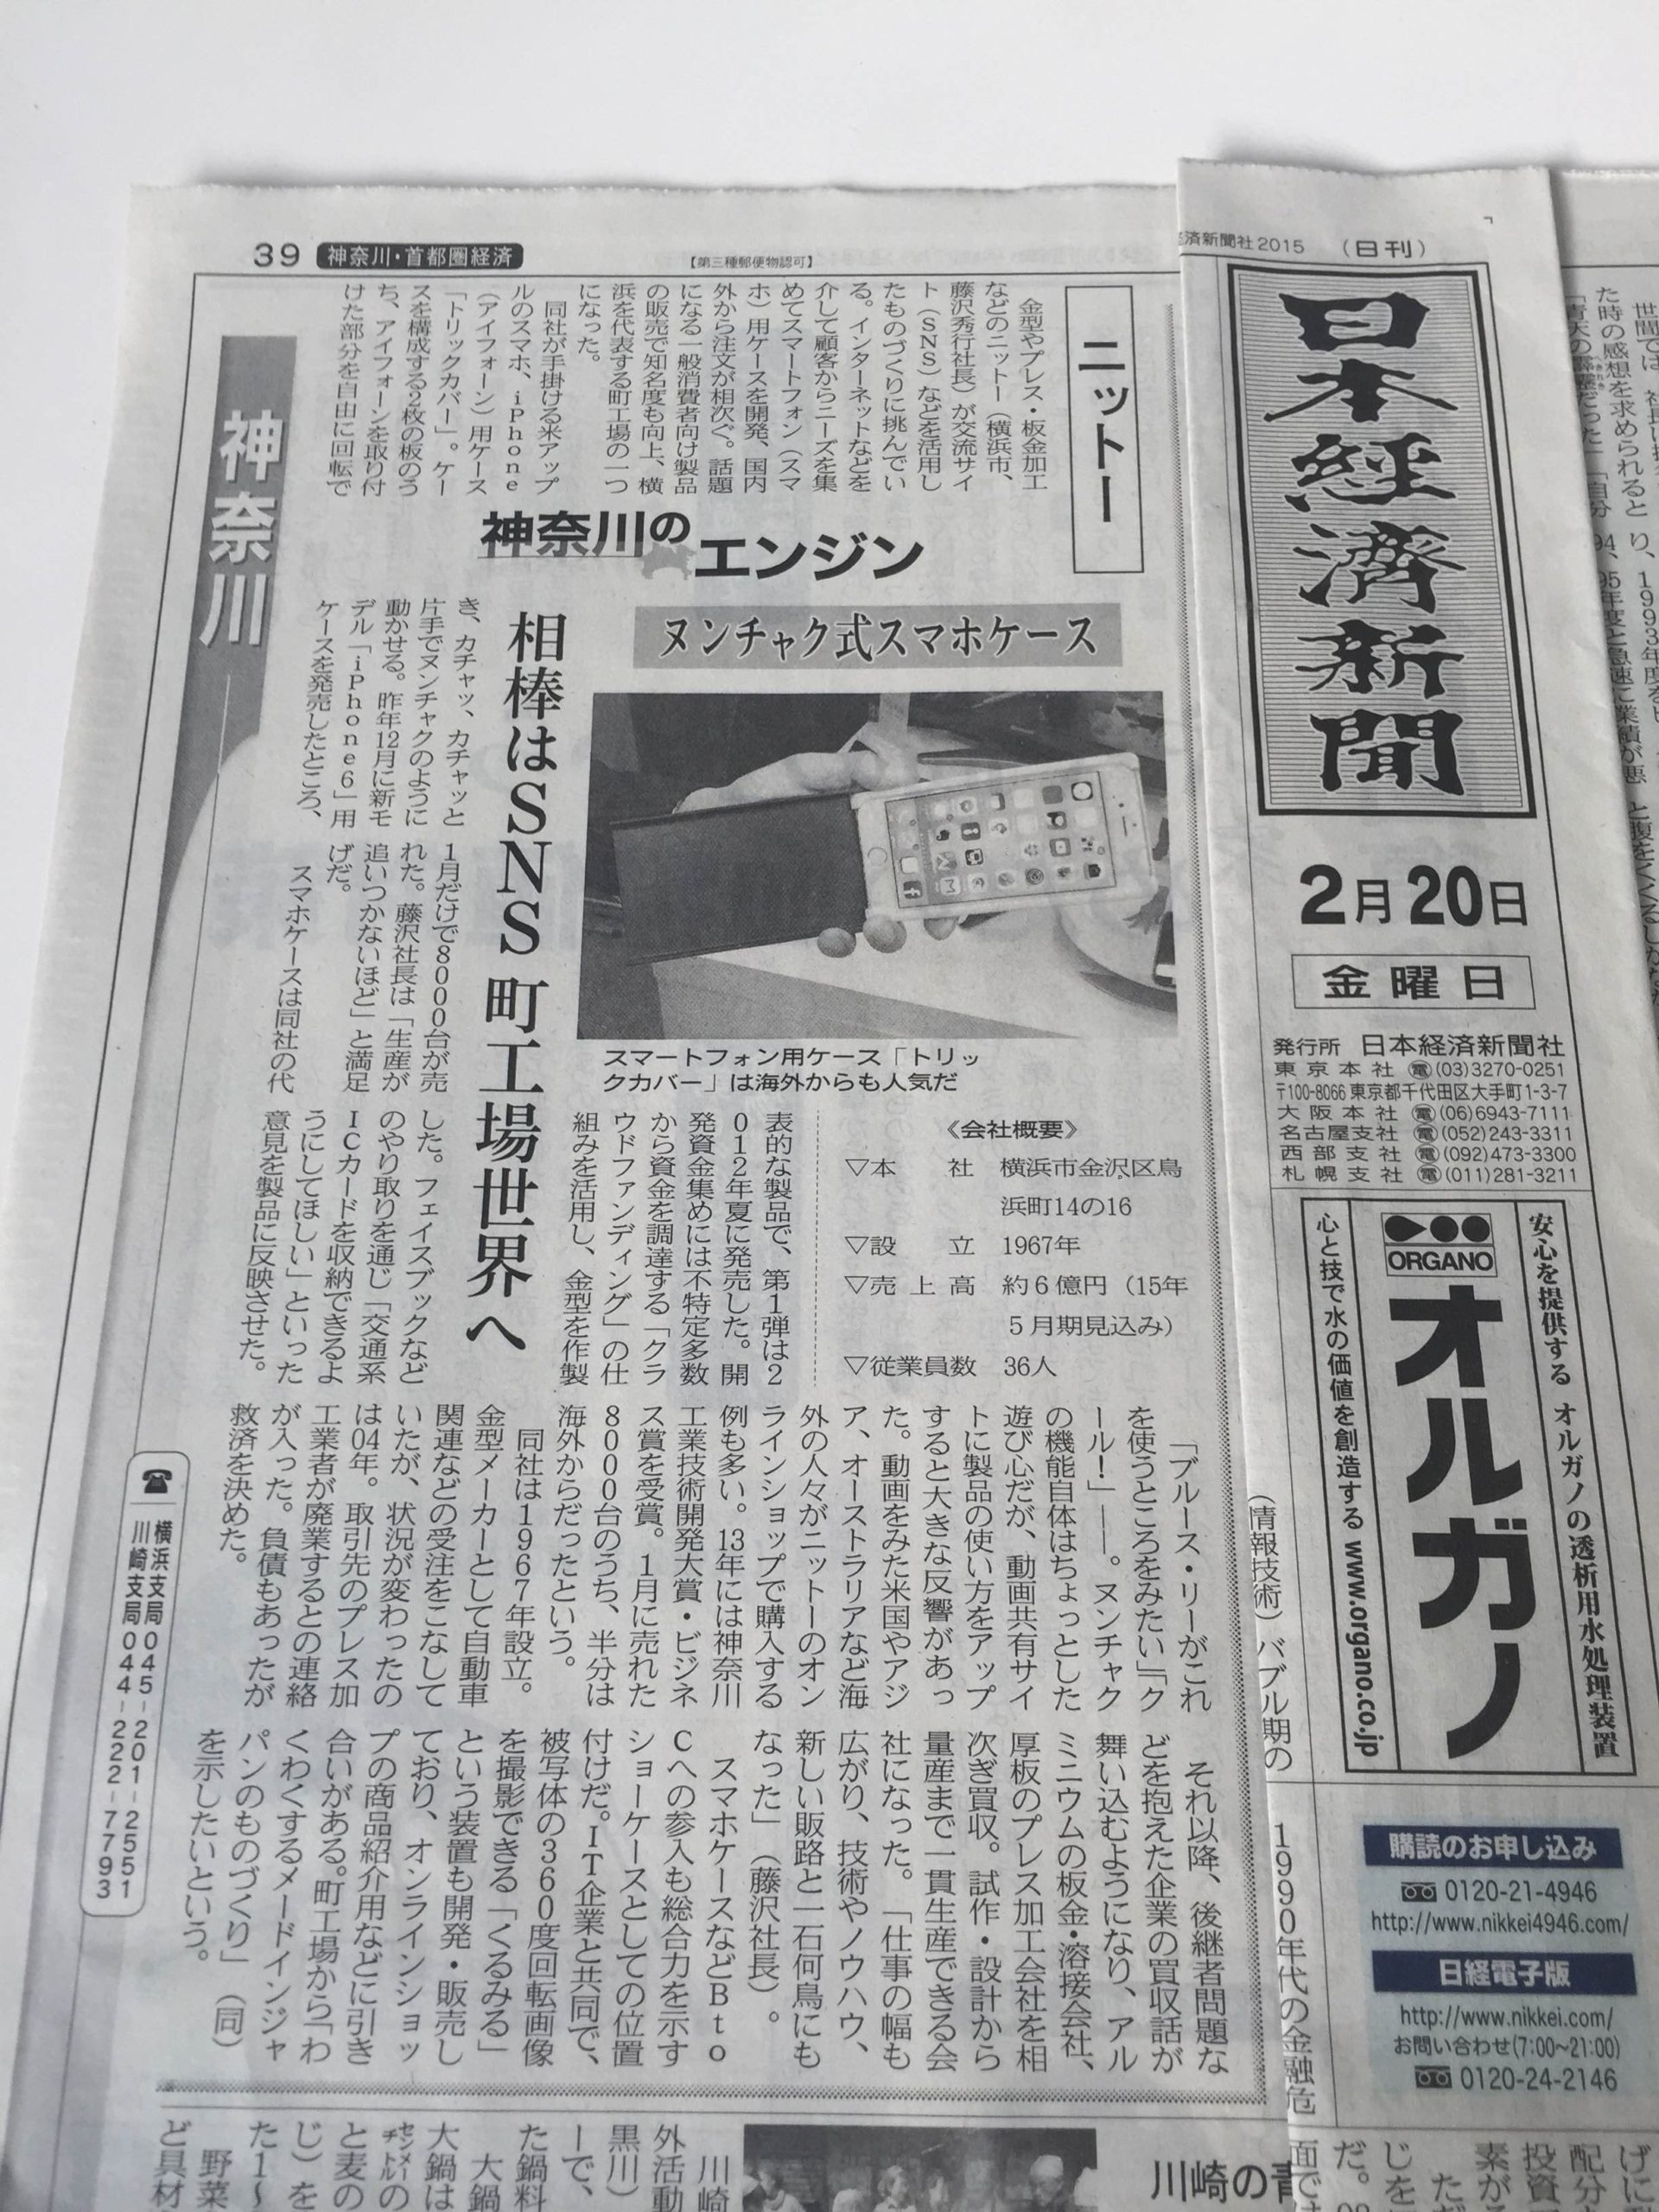 2月20日発行『日本経済新聞』に掲載